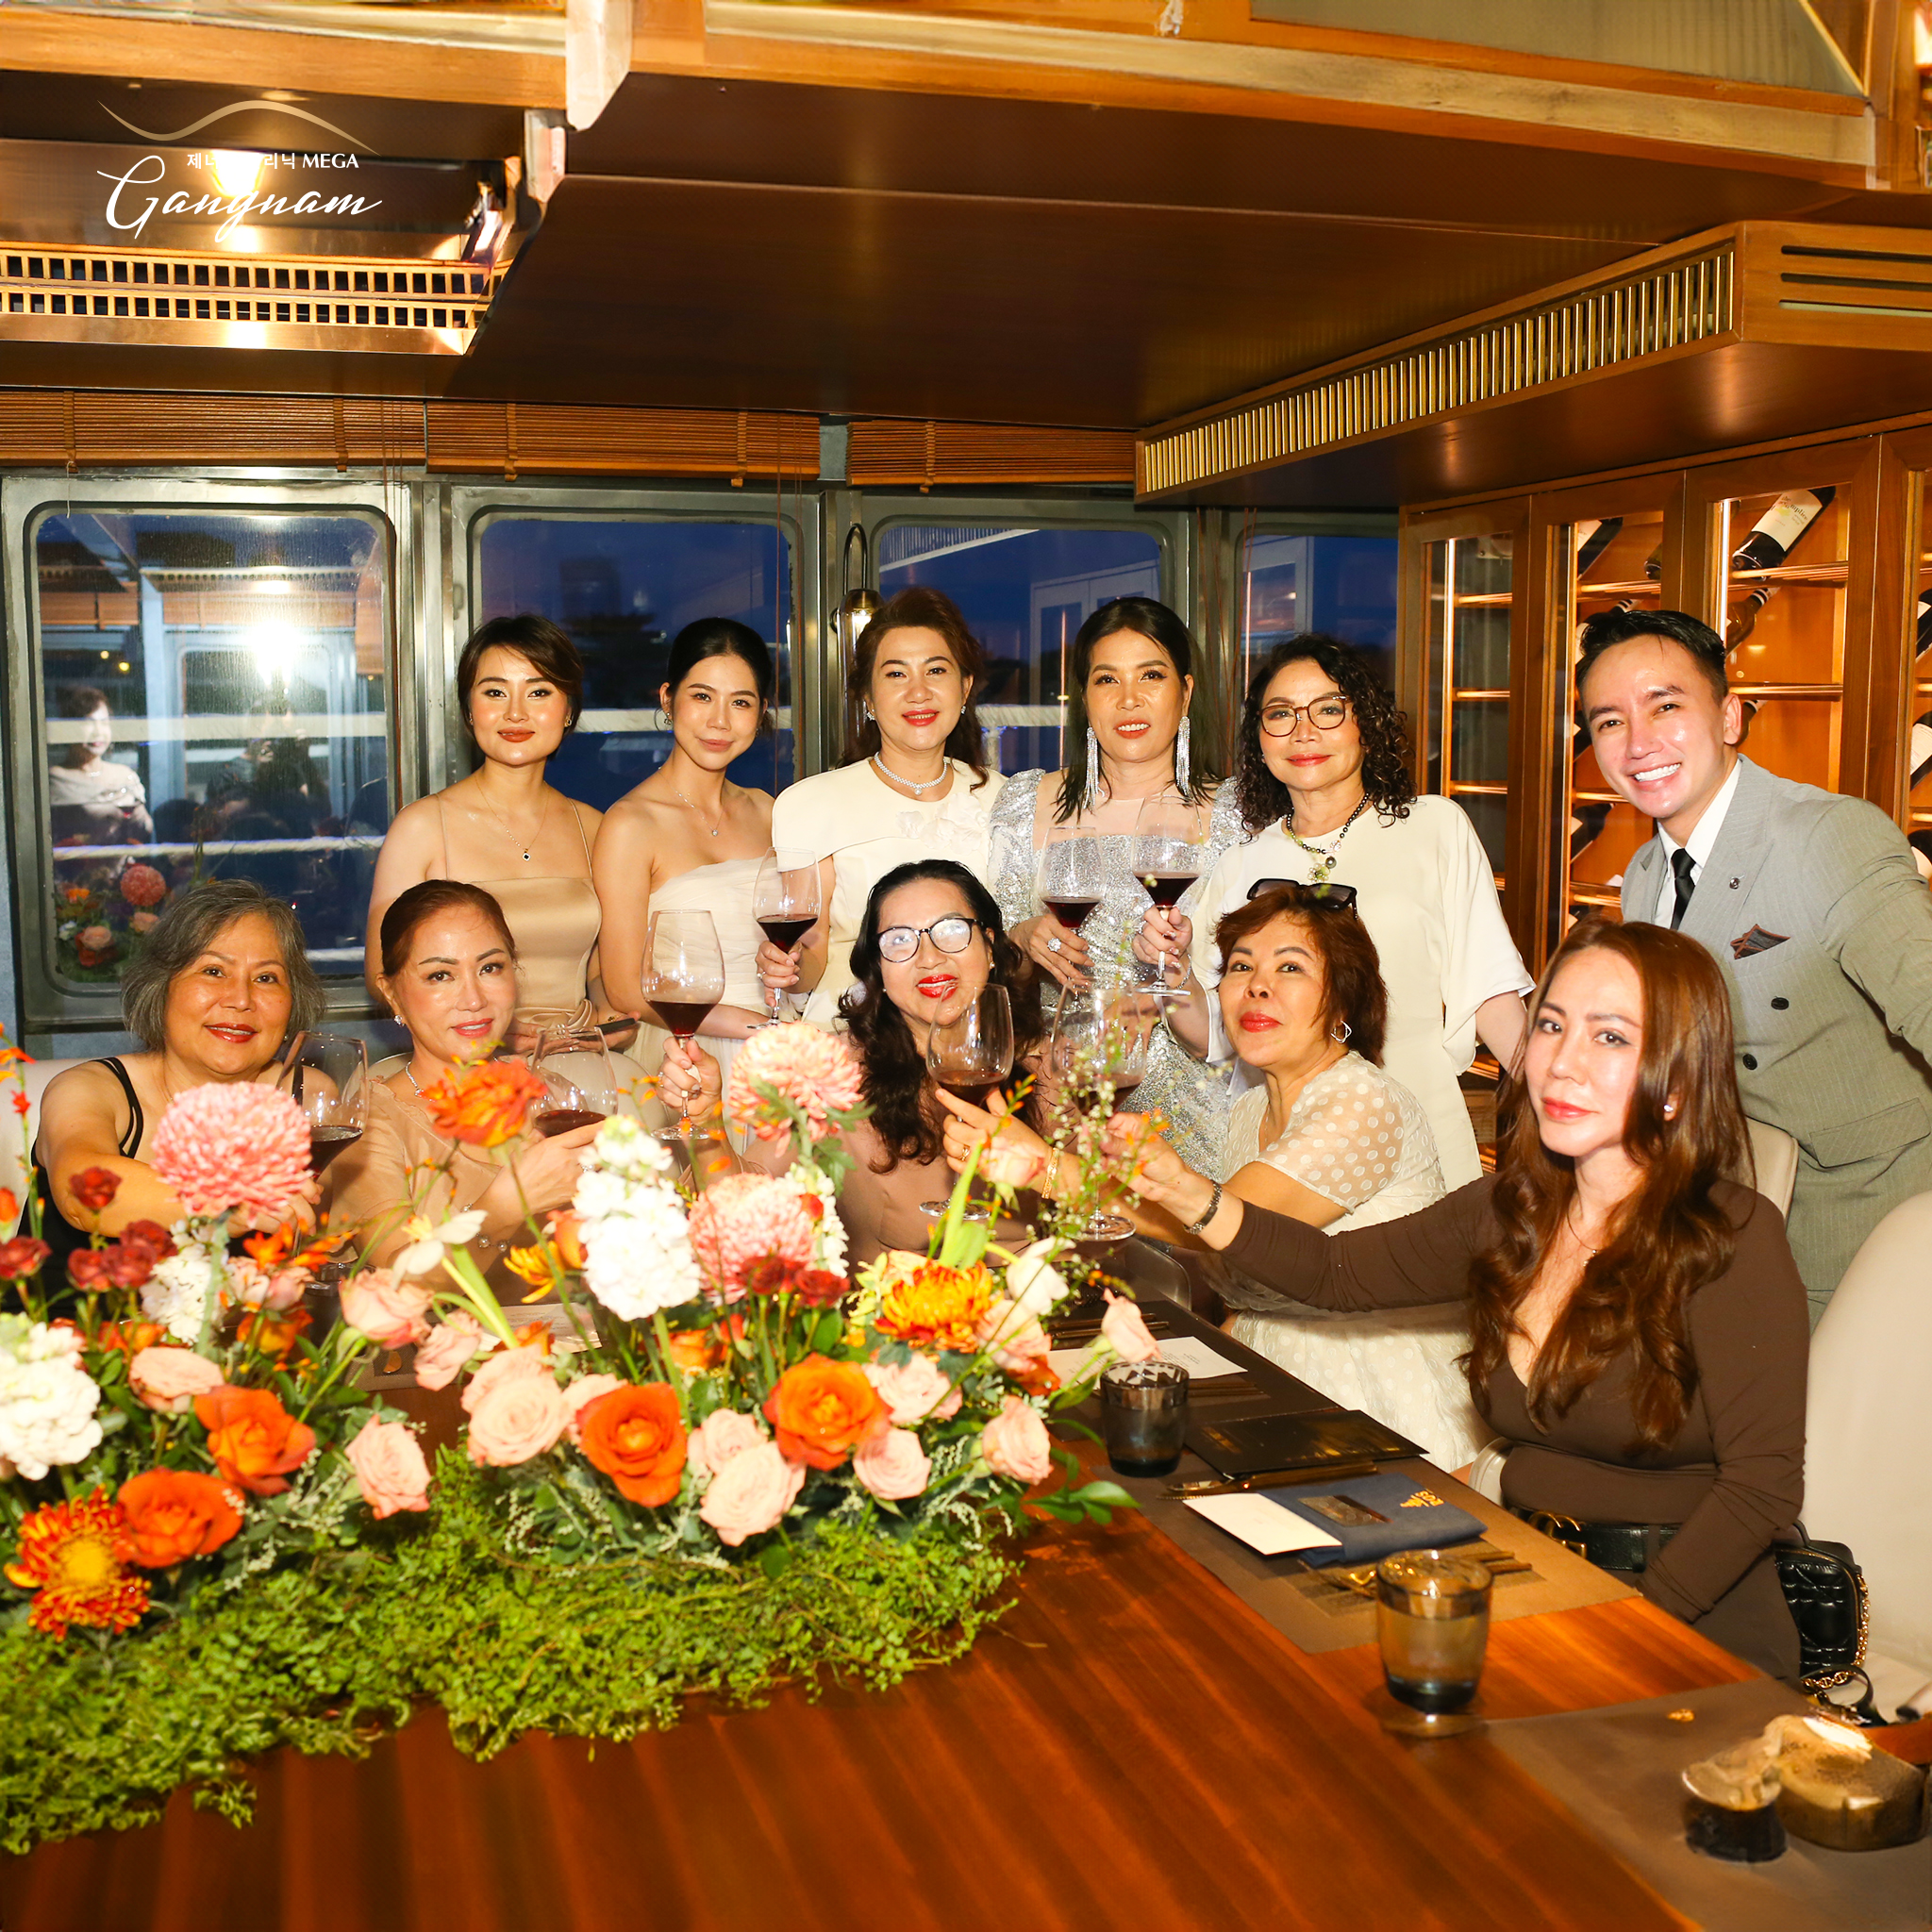 Hình ảnh sự kiện bữa tiệc dành cho khách hàng VIP của Mega Gangnam